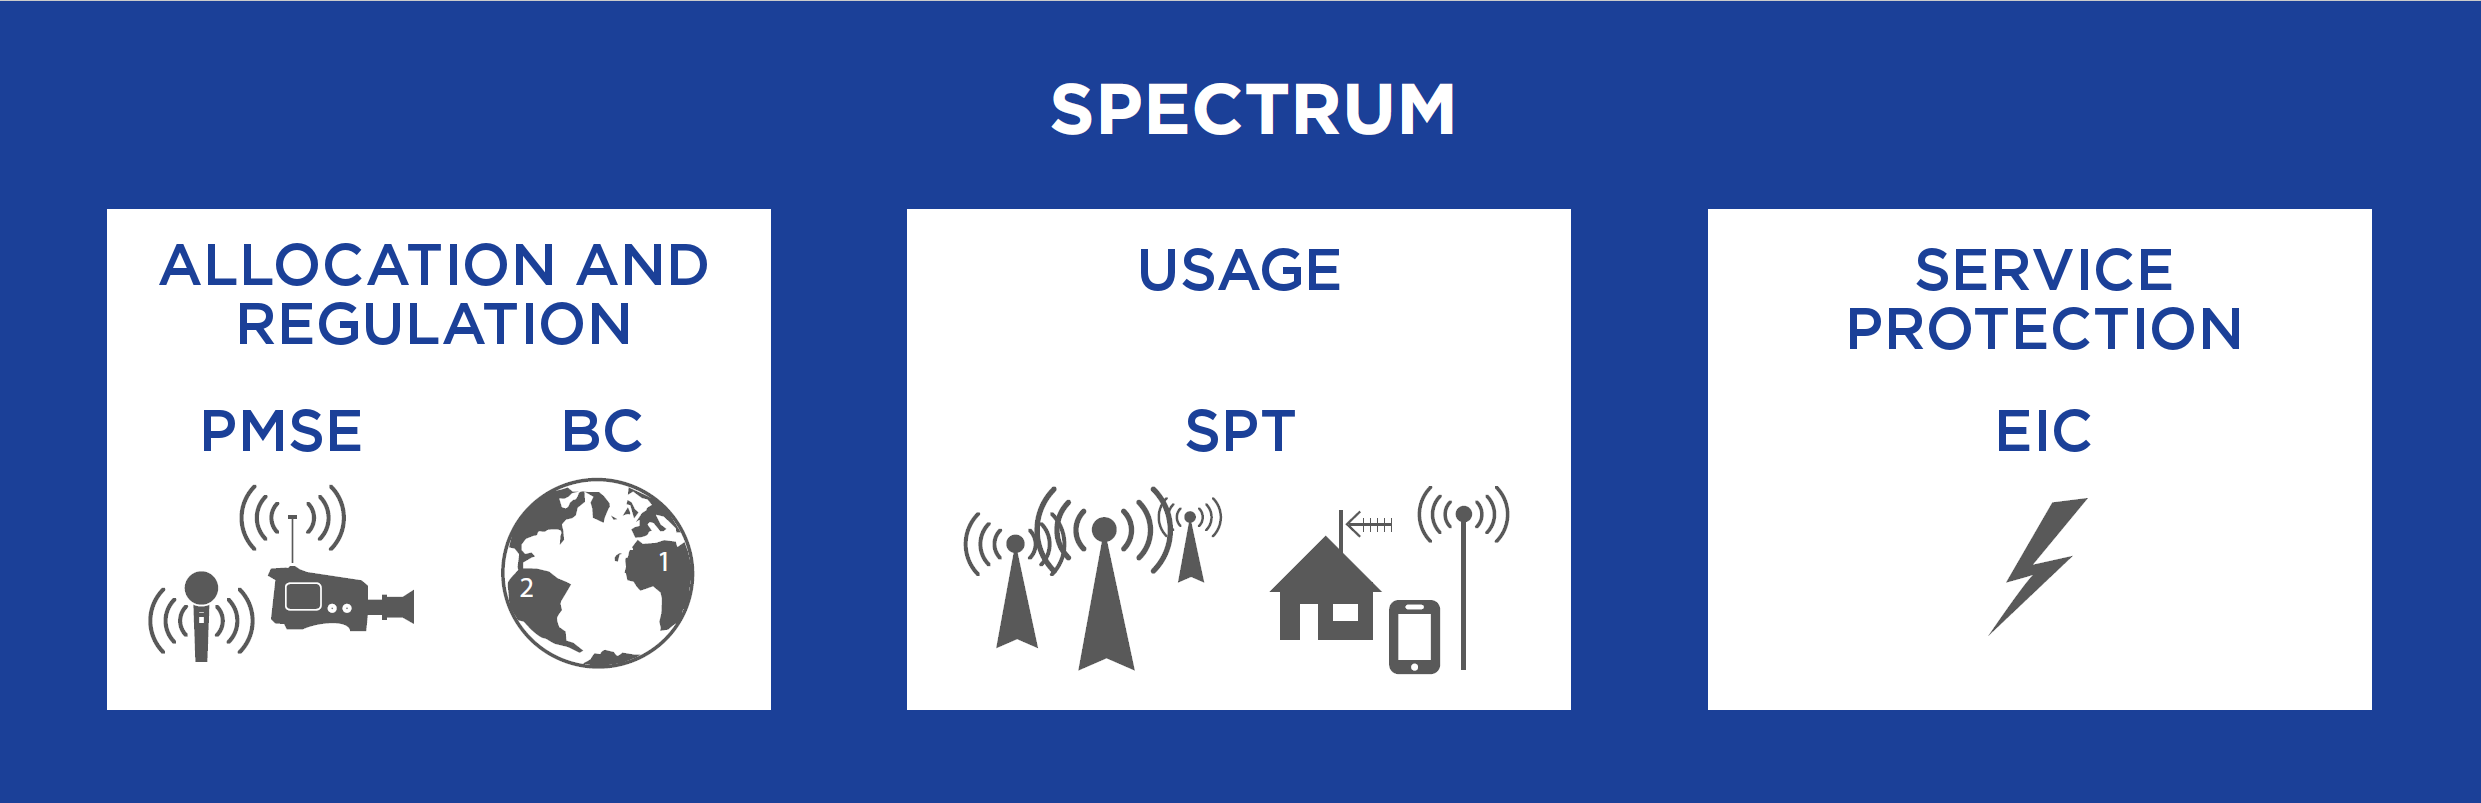 spectrum_main_v2.png